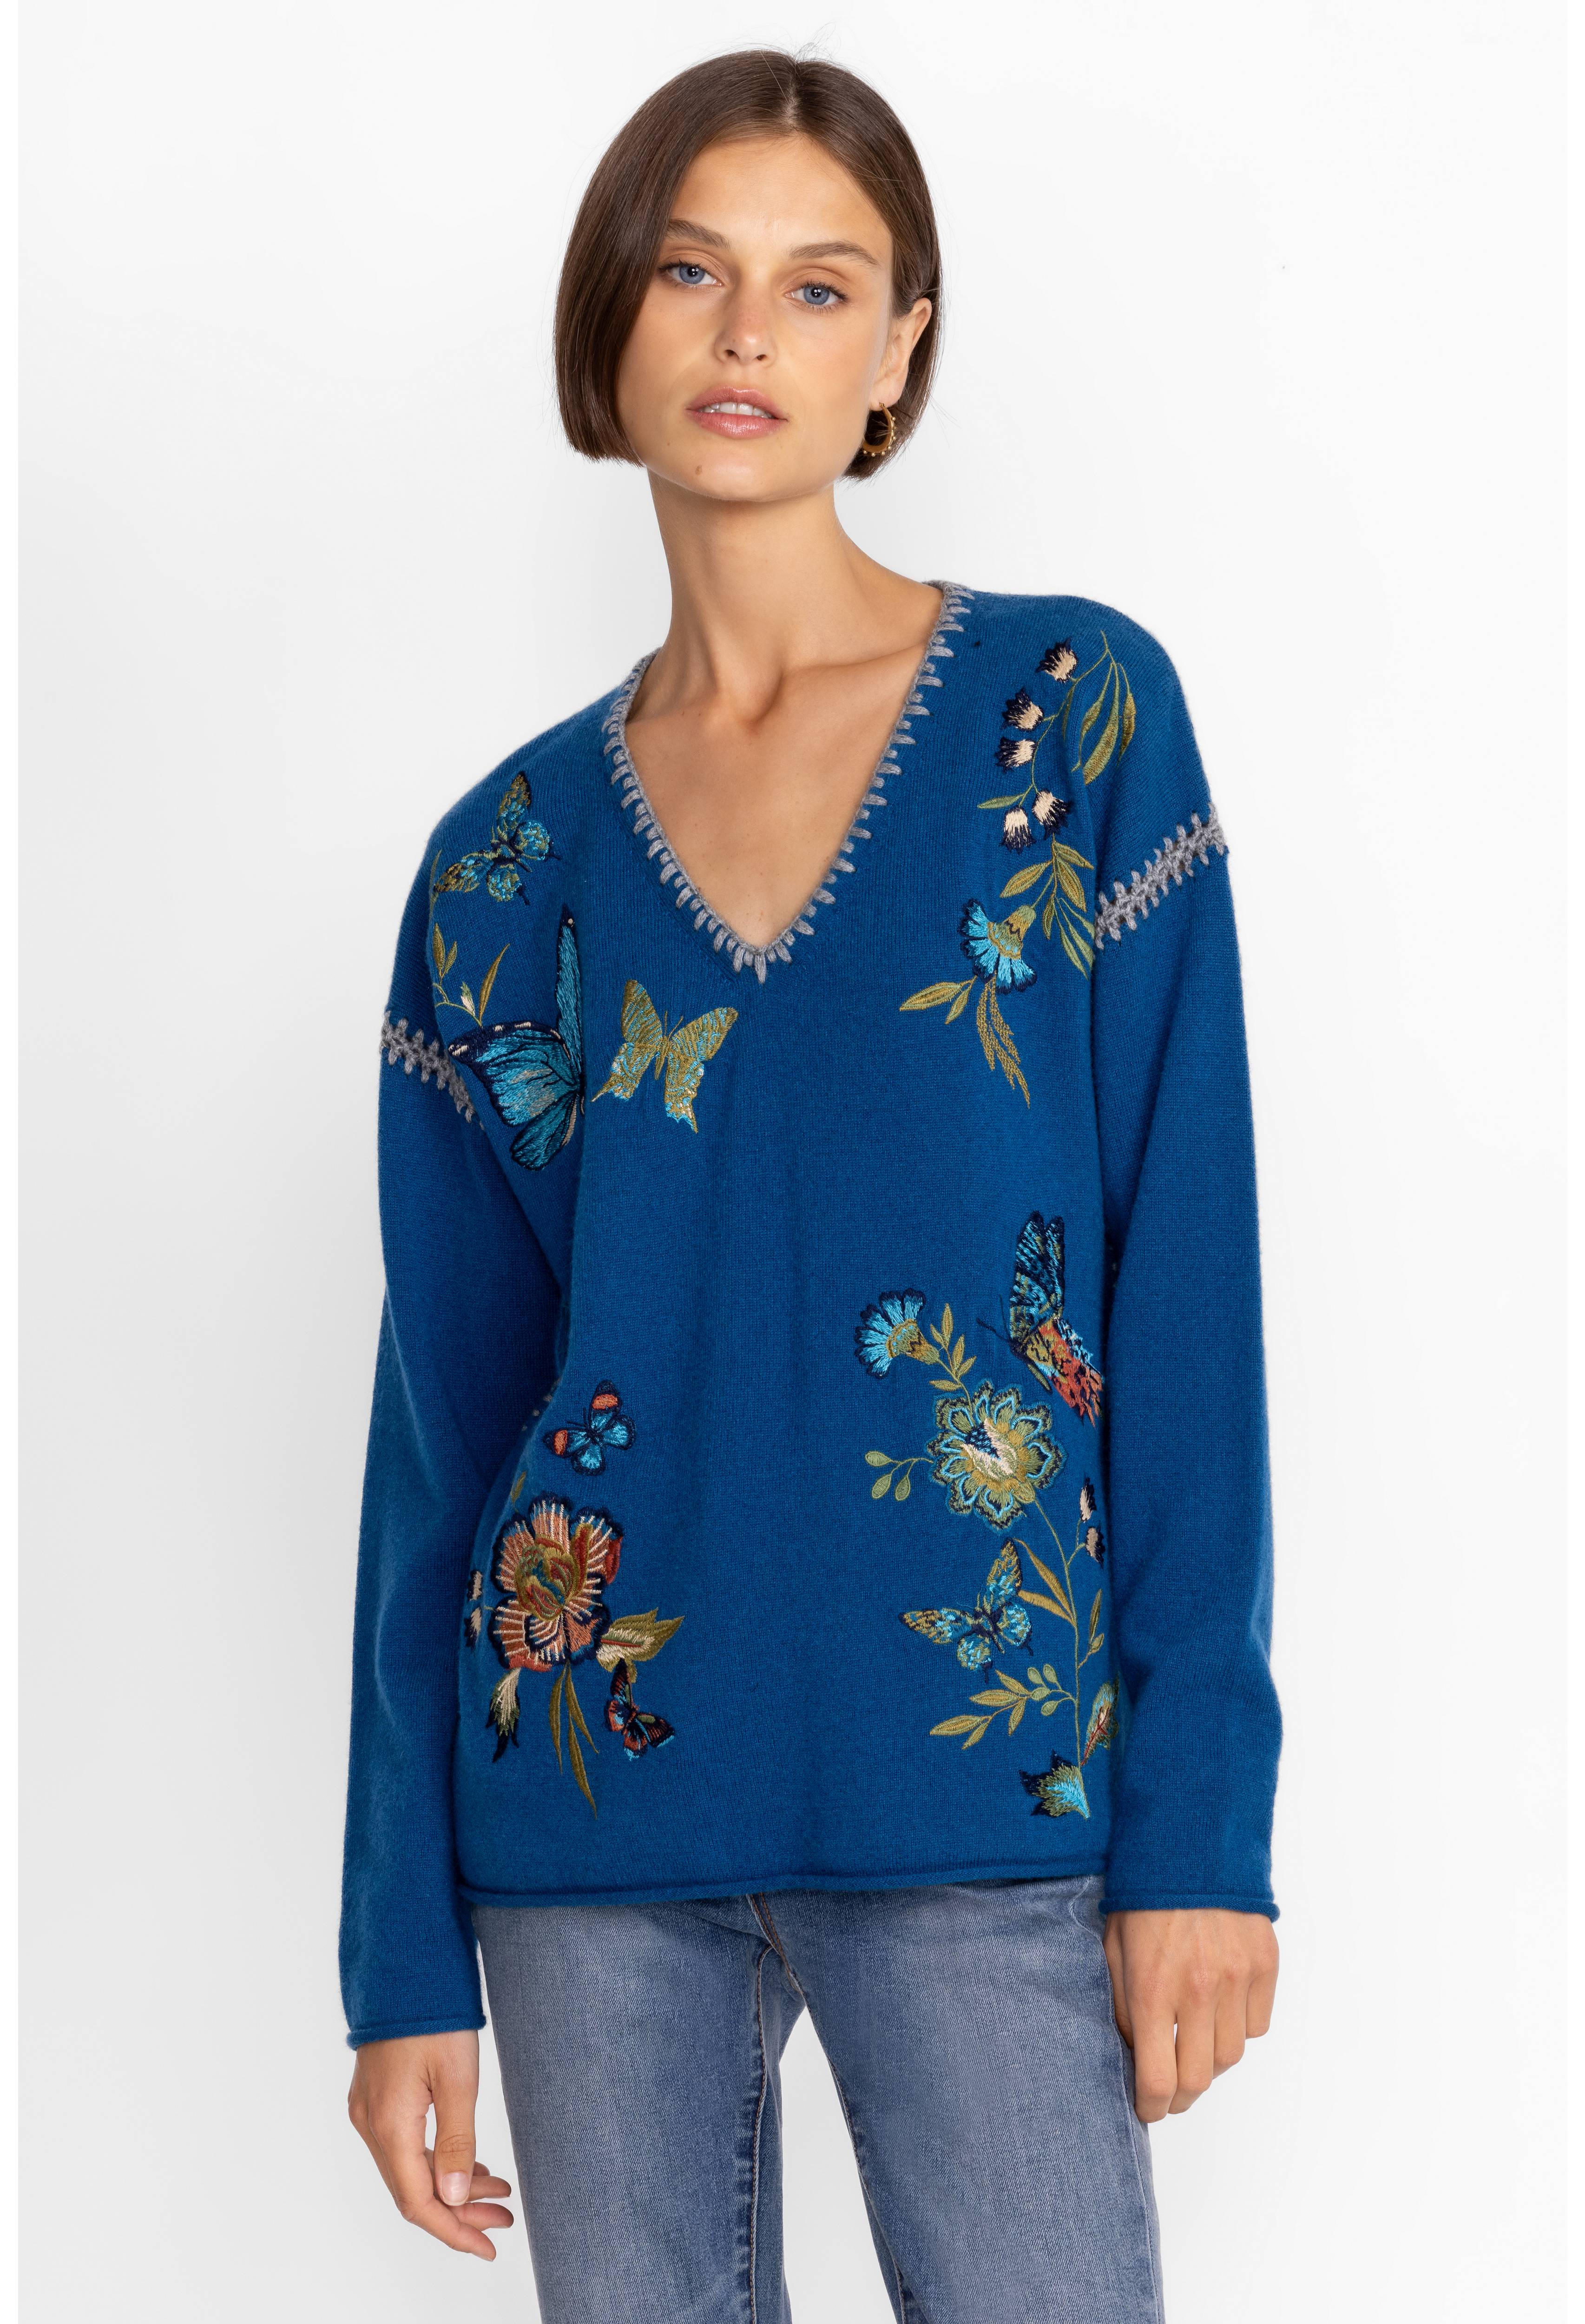 Sidona Cashmere Whipstitch Sweater, , large image number 3